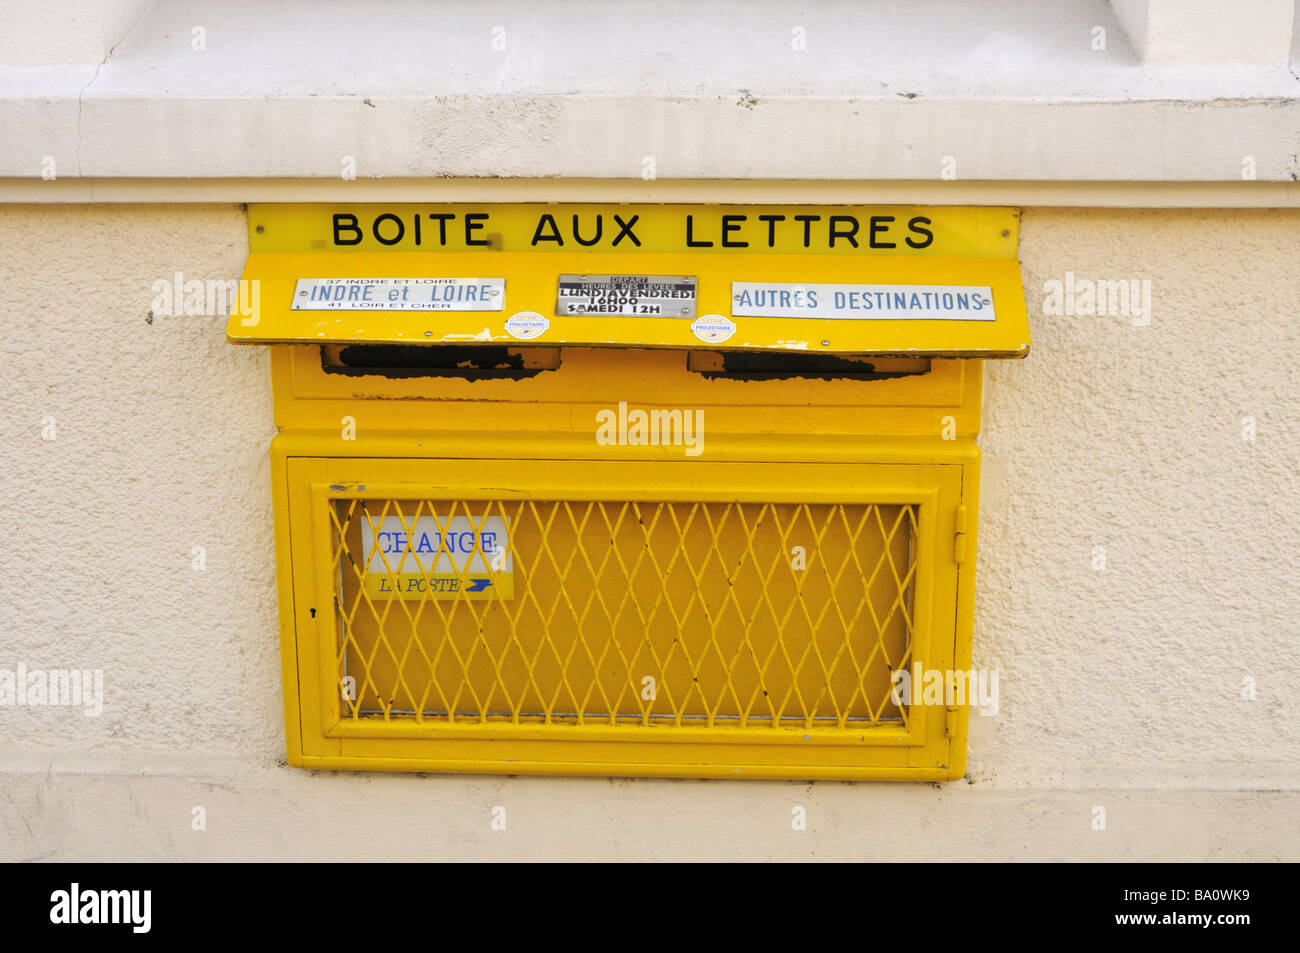 Boite aux lettres jaune francaise Banque de photographies et d